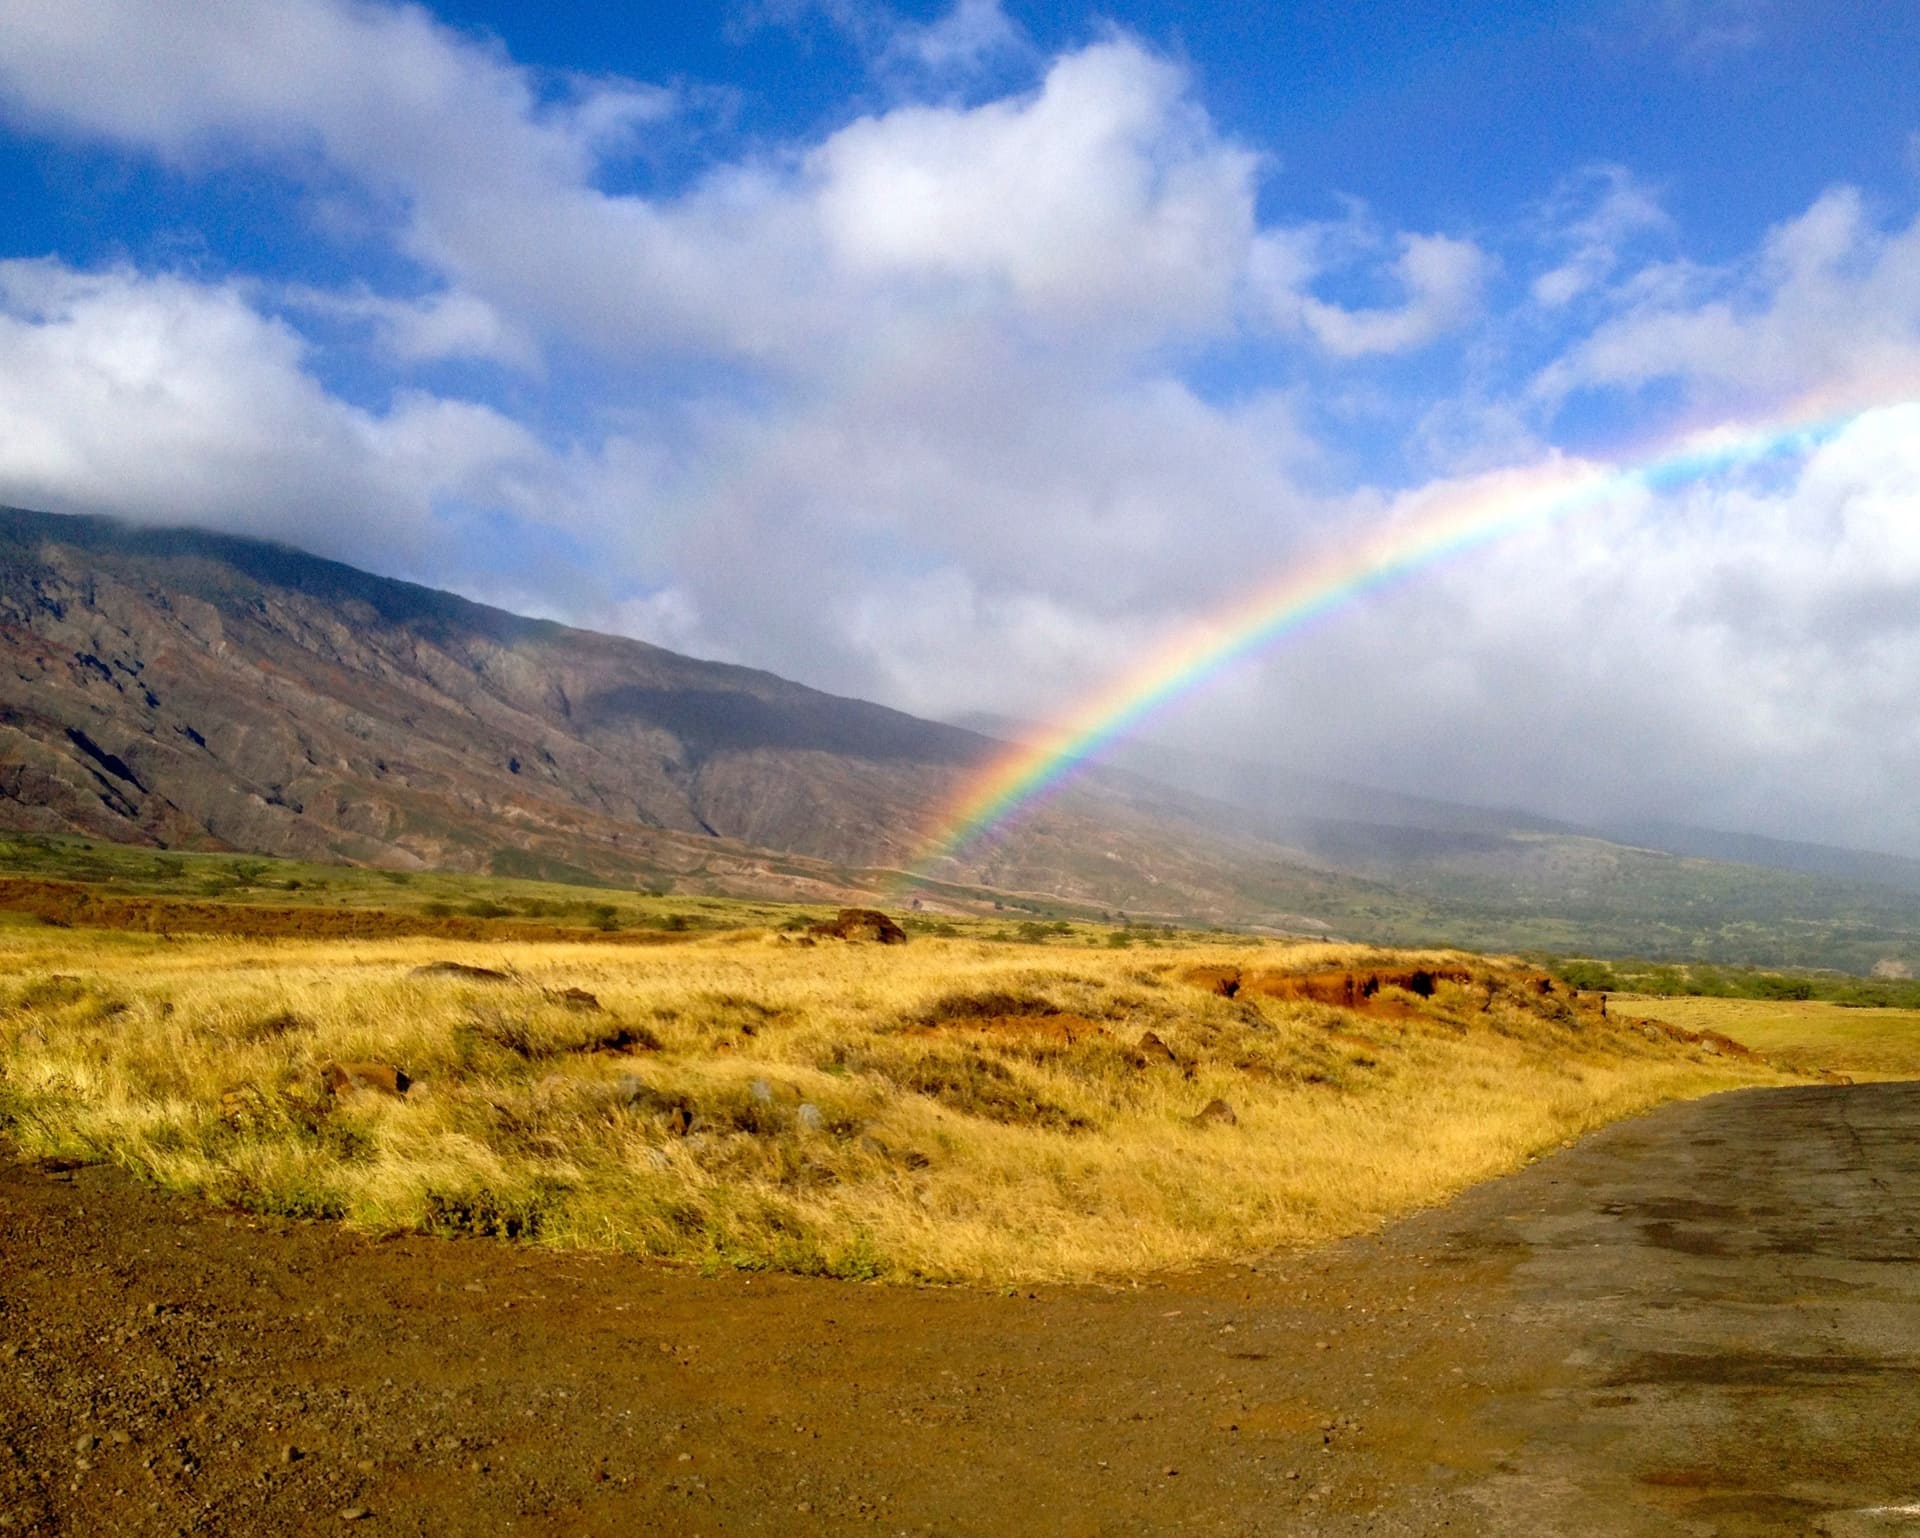 KaupoRainbow - All the Way Around - Holo Holo Maui Tours